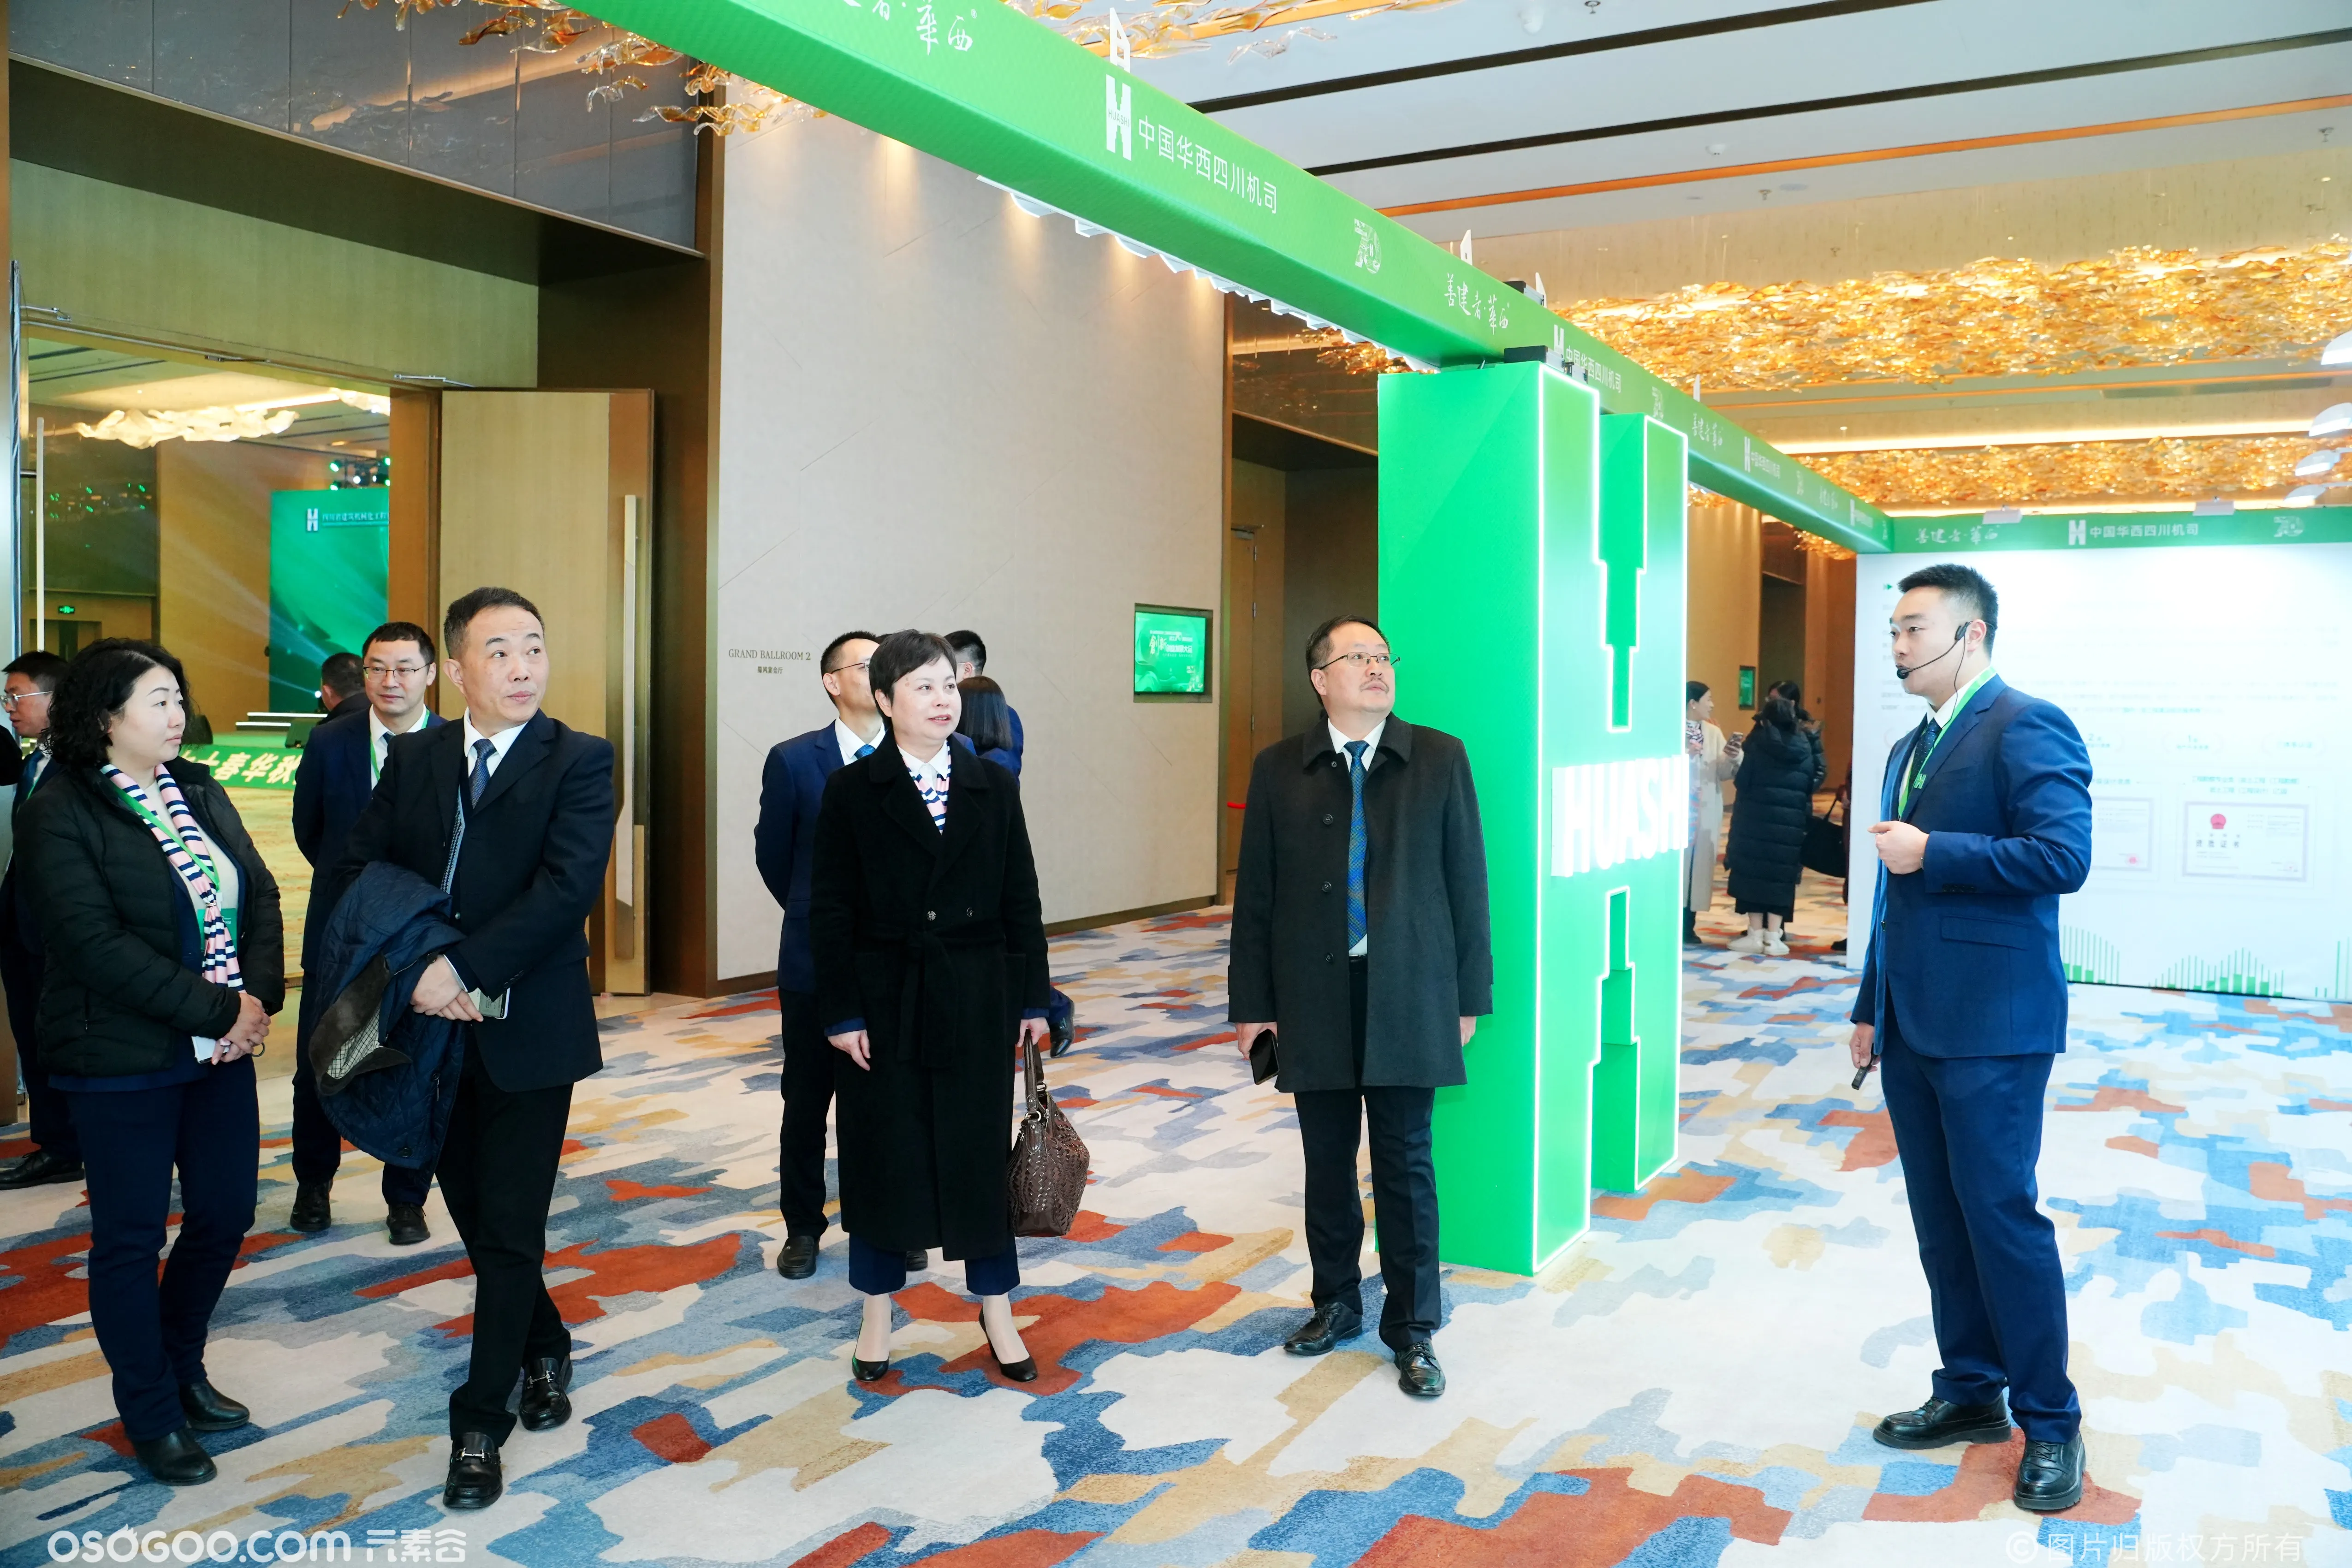 中国华西四川机司成立70周年总结暨创新创业发展大会